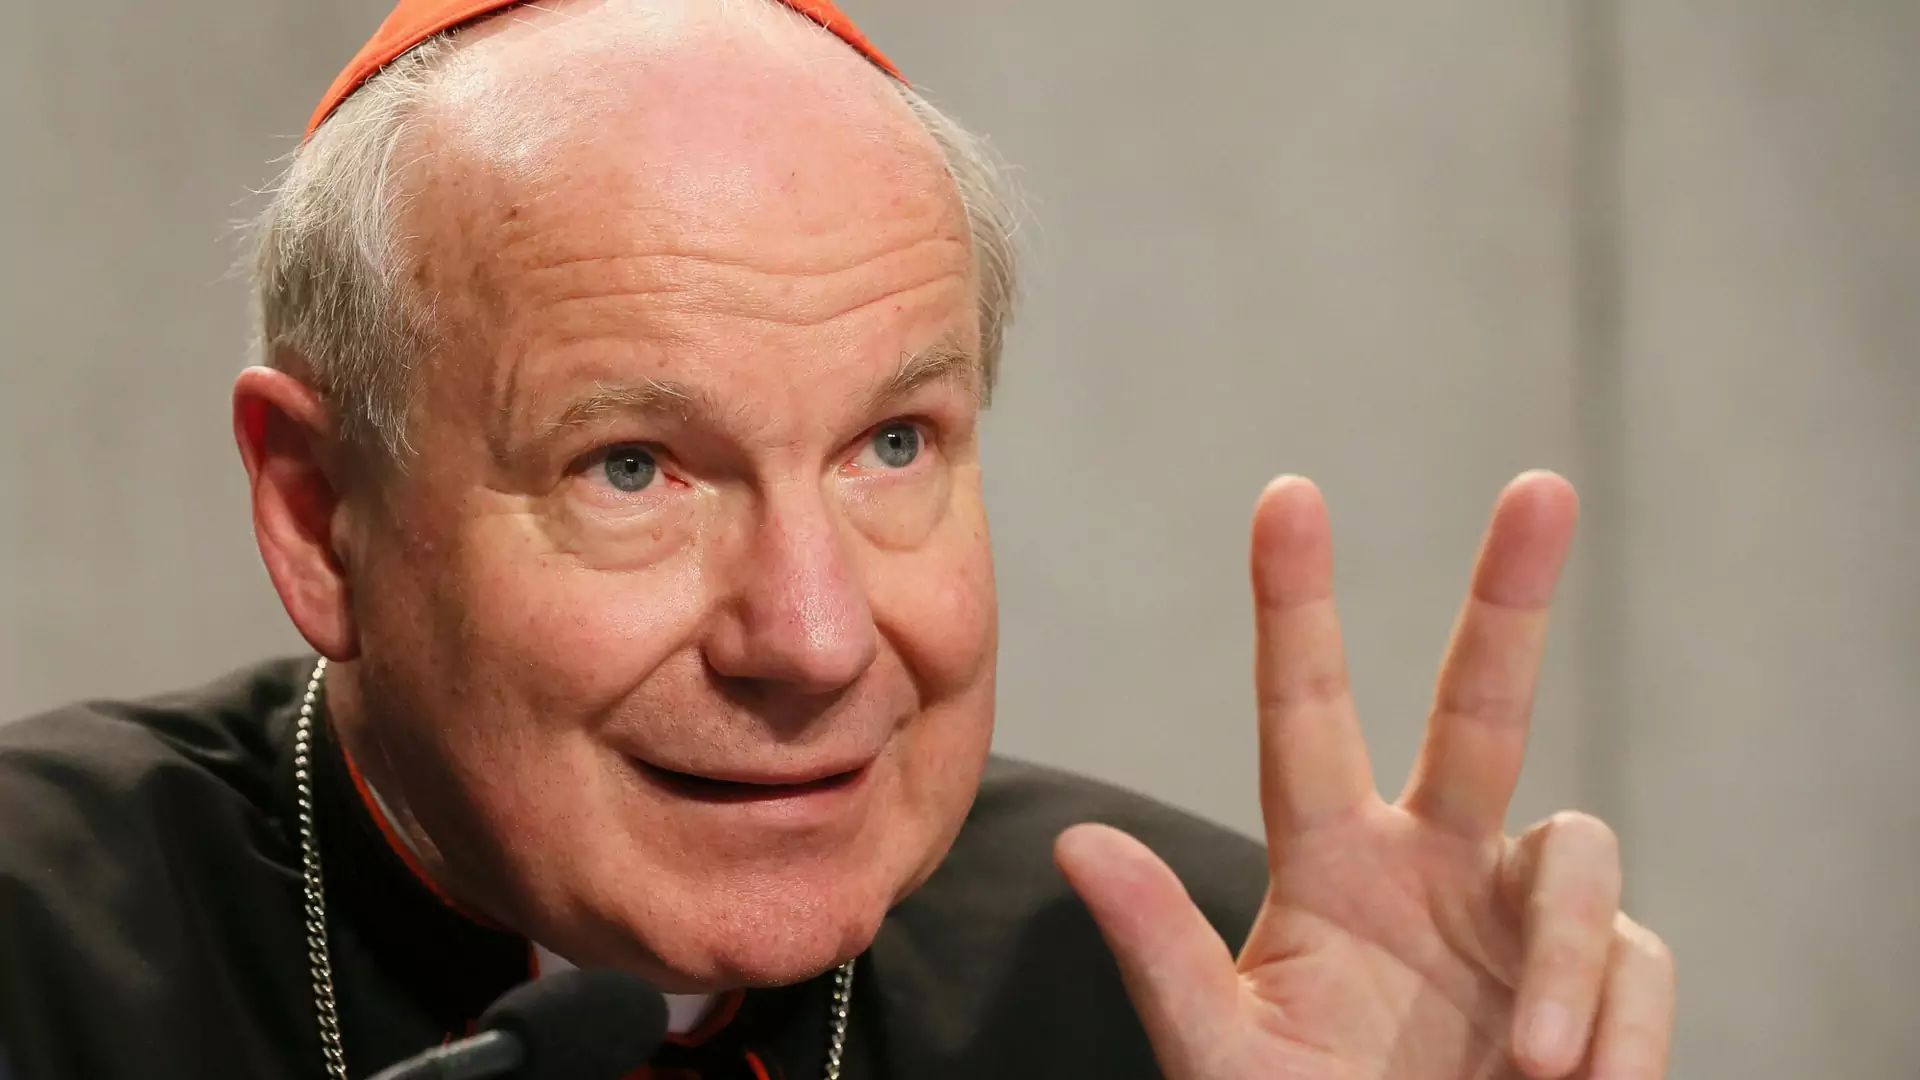 Biskupi z Austrii chcą błogosławić niektóre pary LGBT+. "Kościół nie może im odmówić"